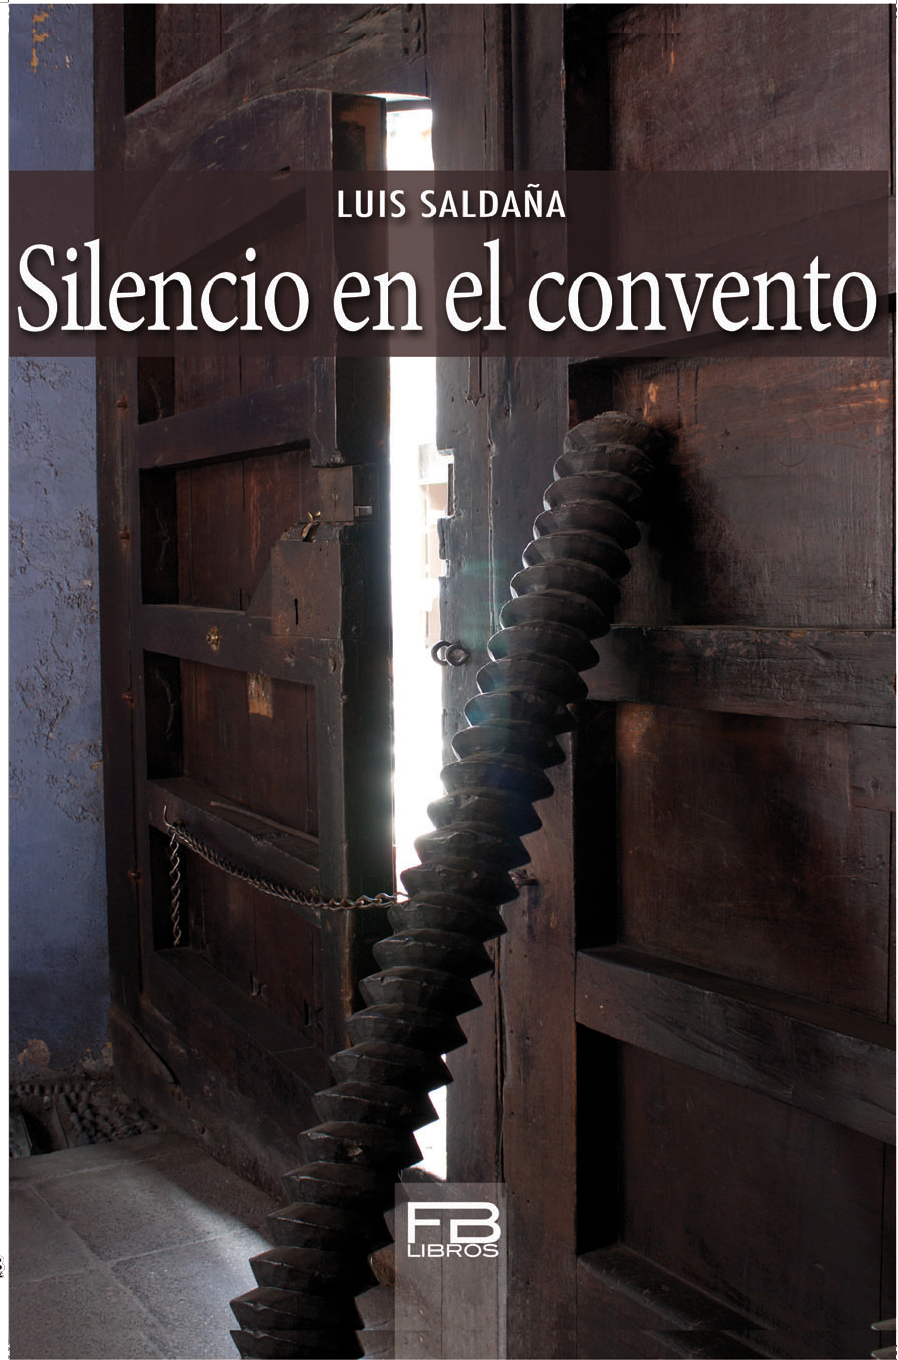 "Silencio en el convento"